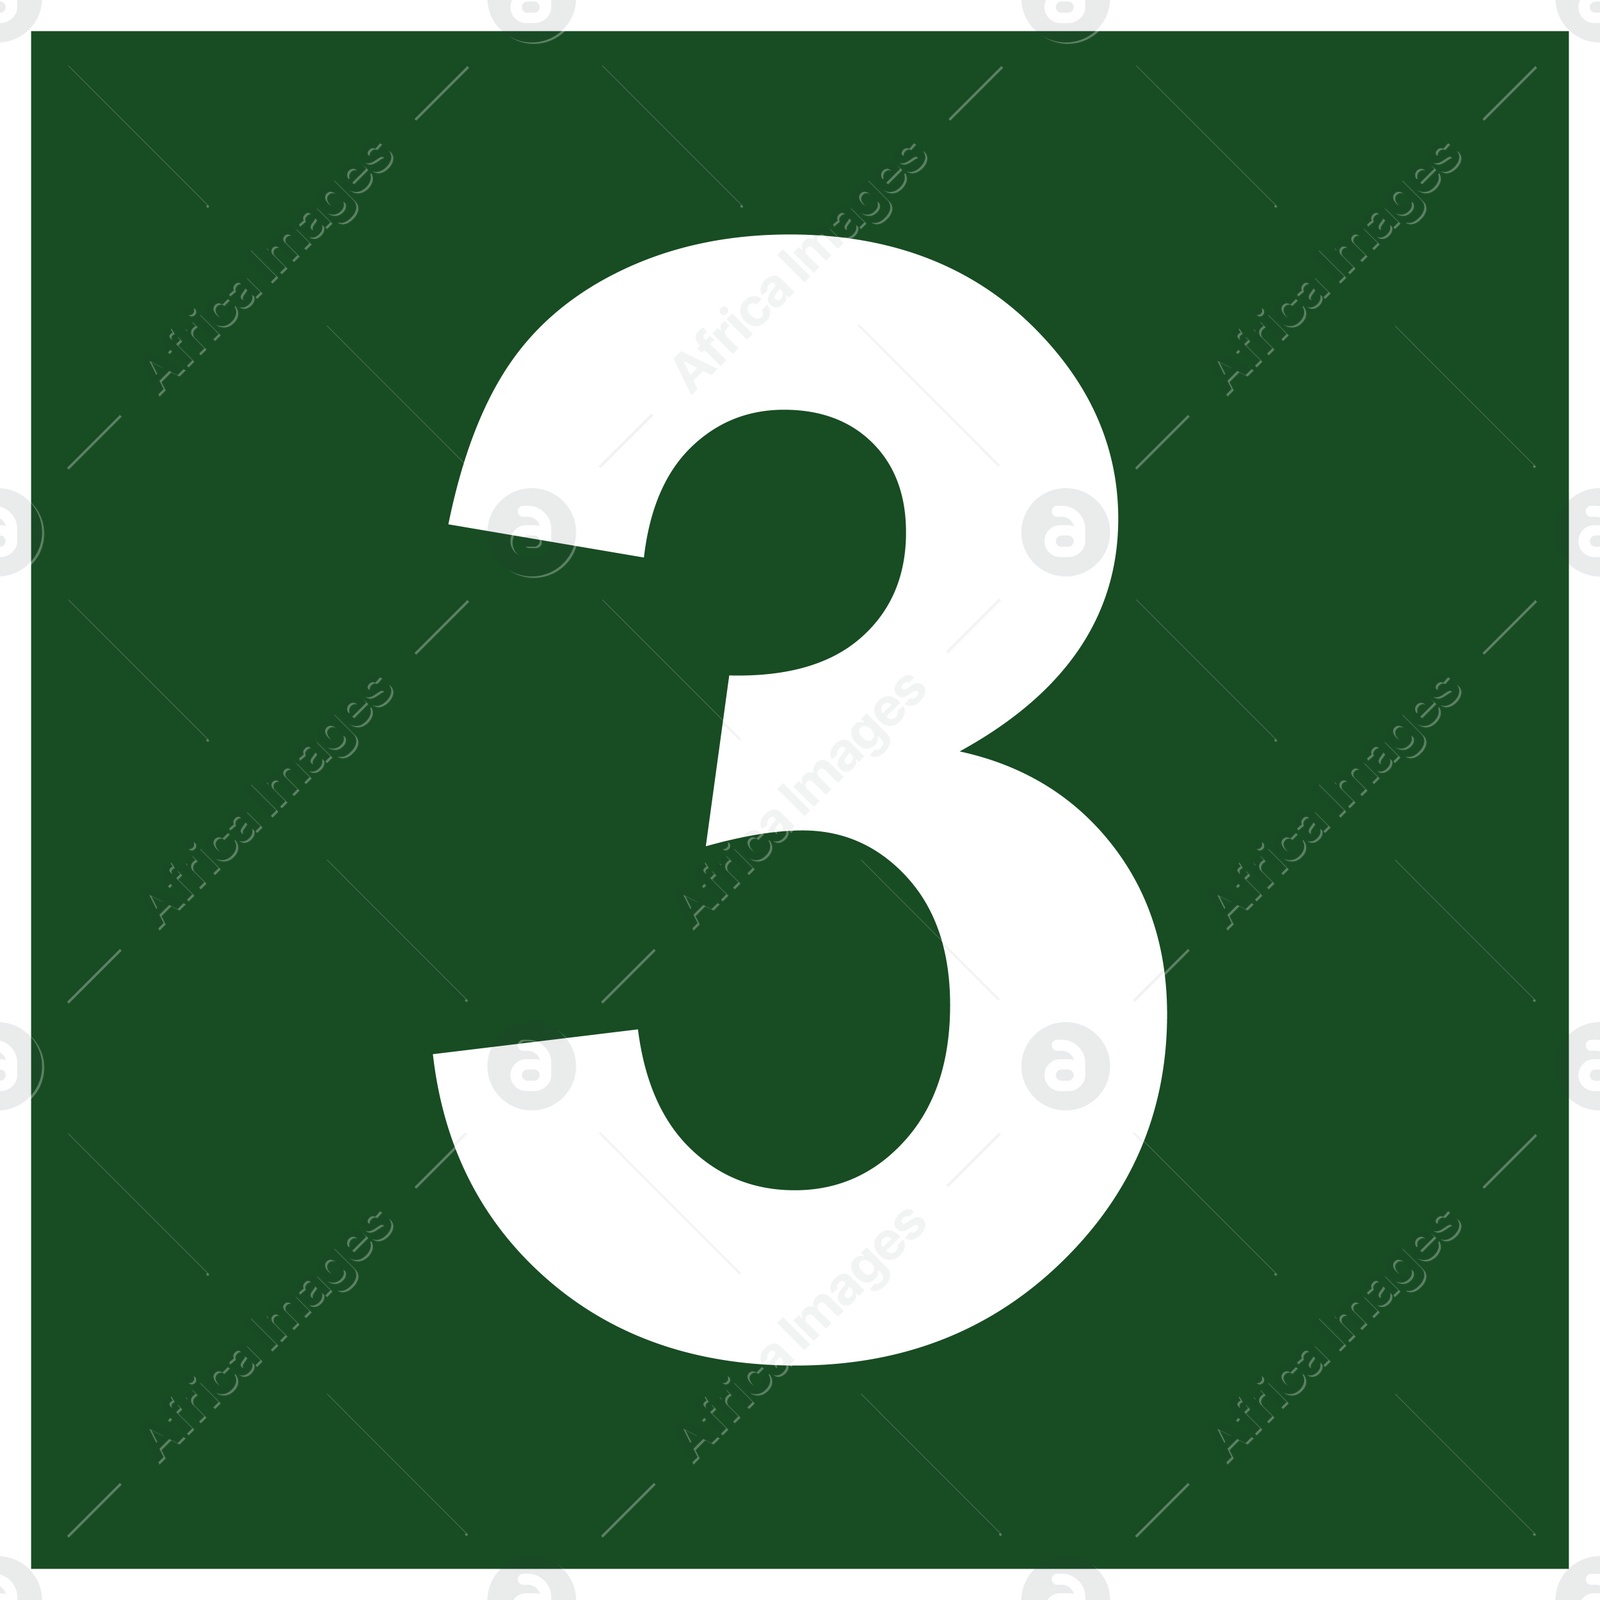 Image of International Maritime Organization (IMO) sign, illustration. Number "3"